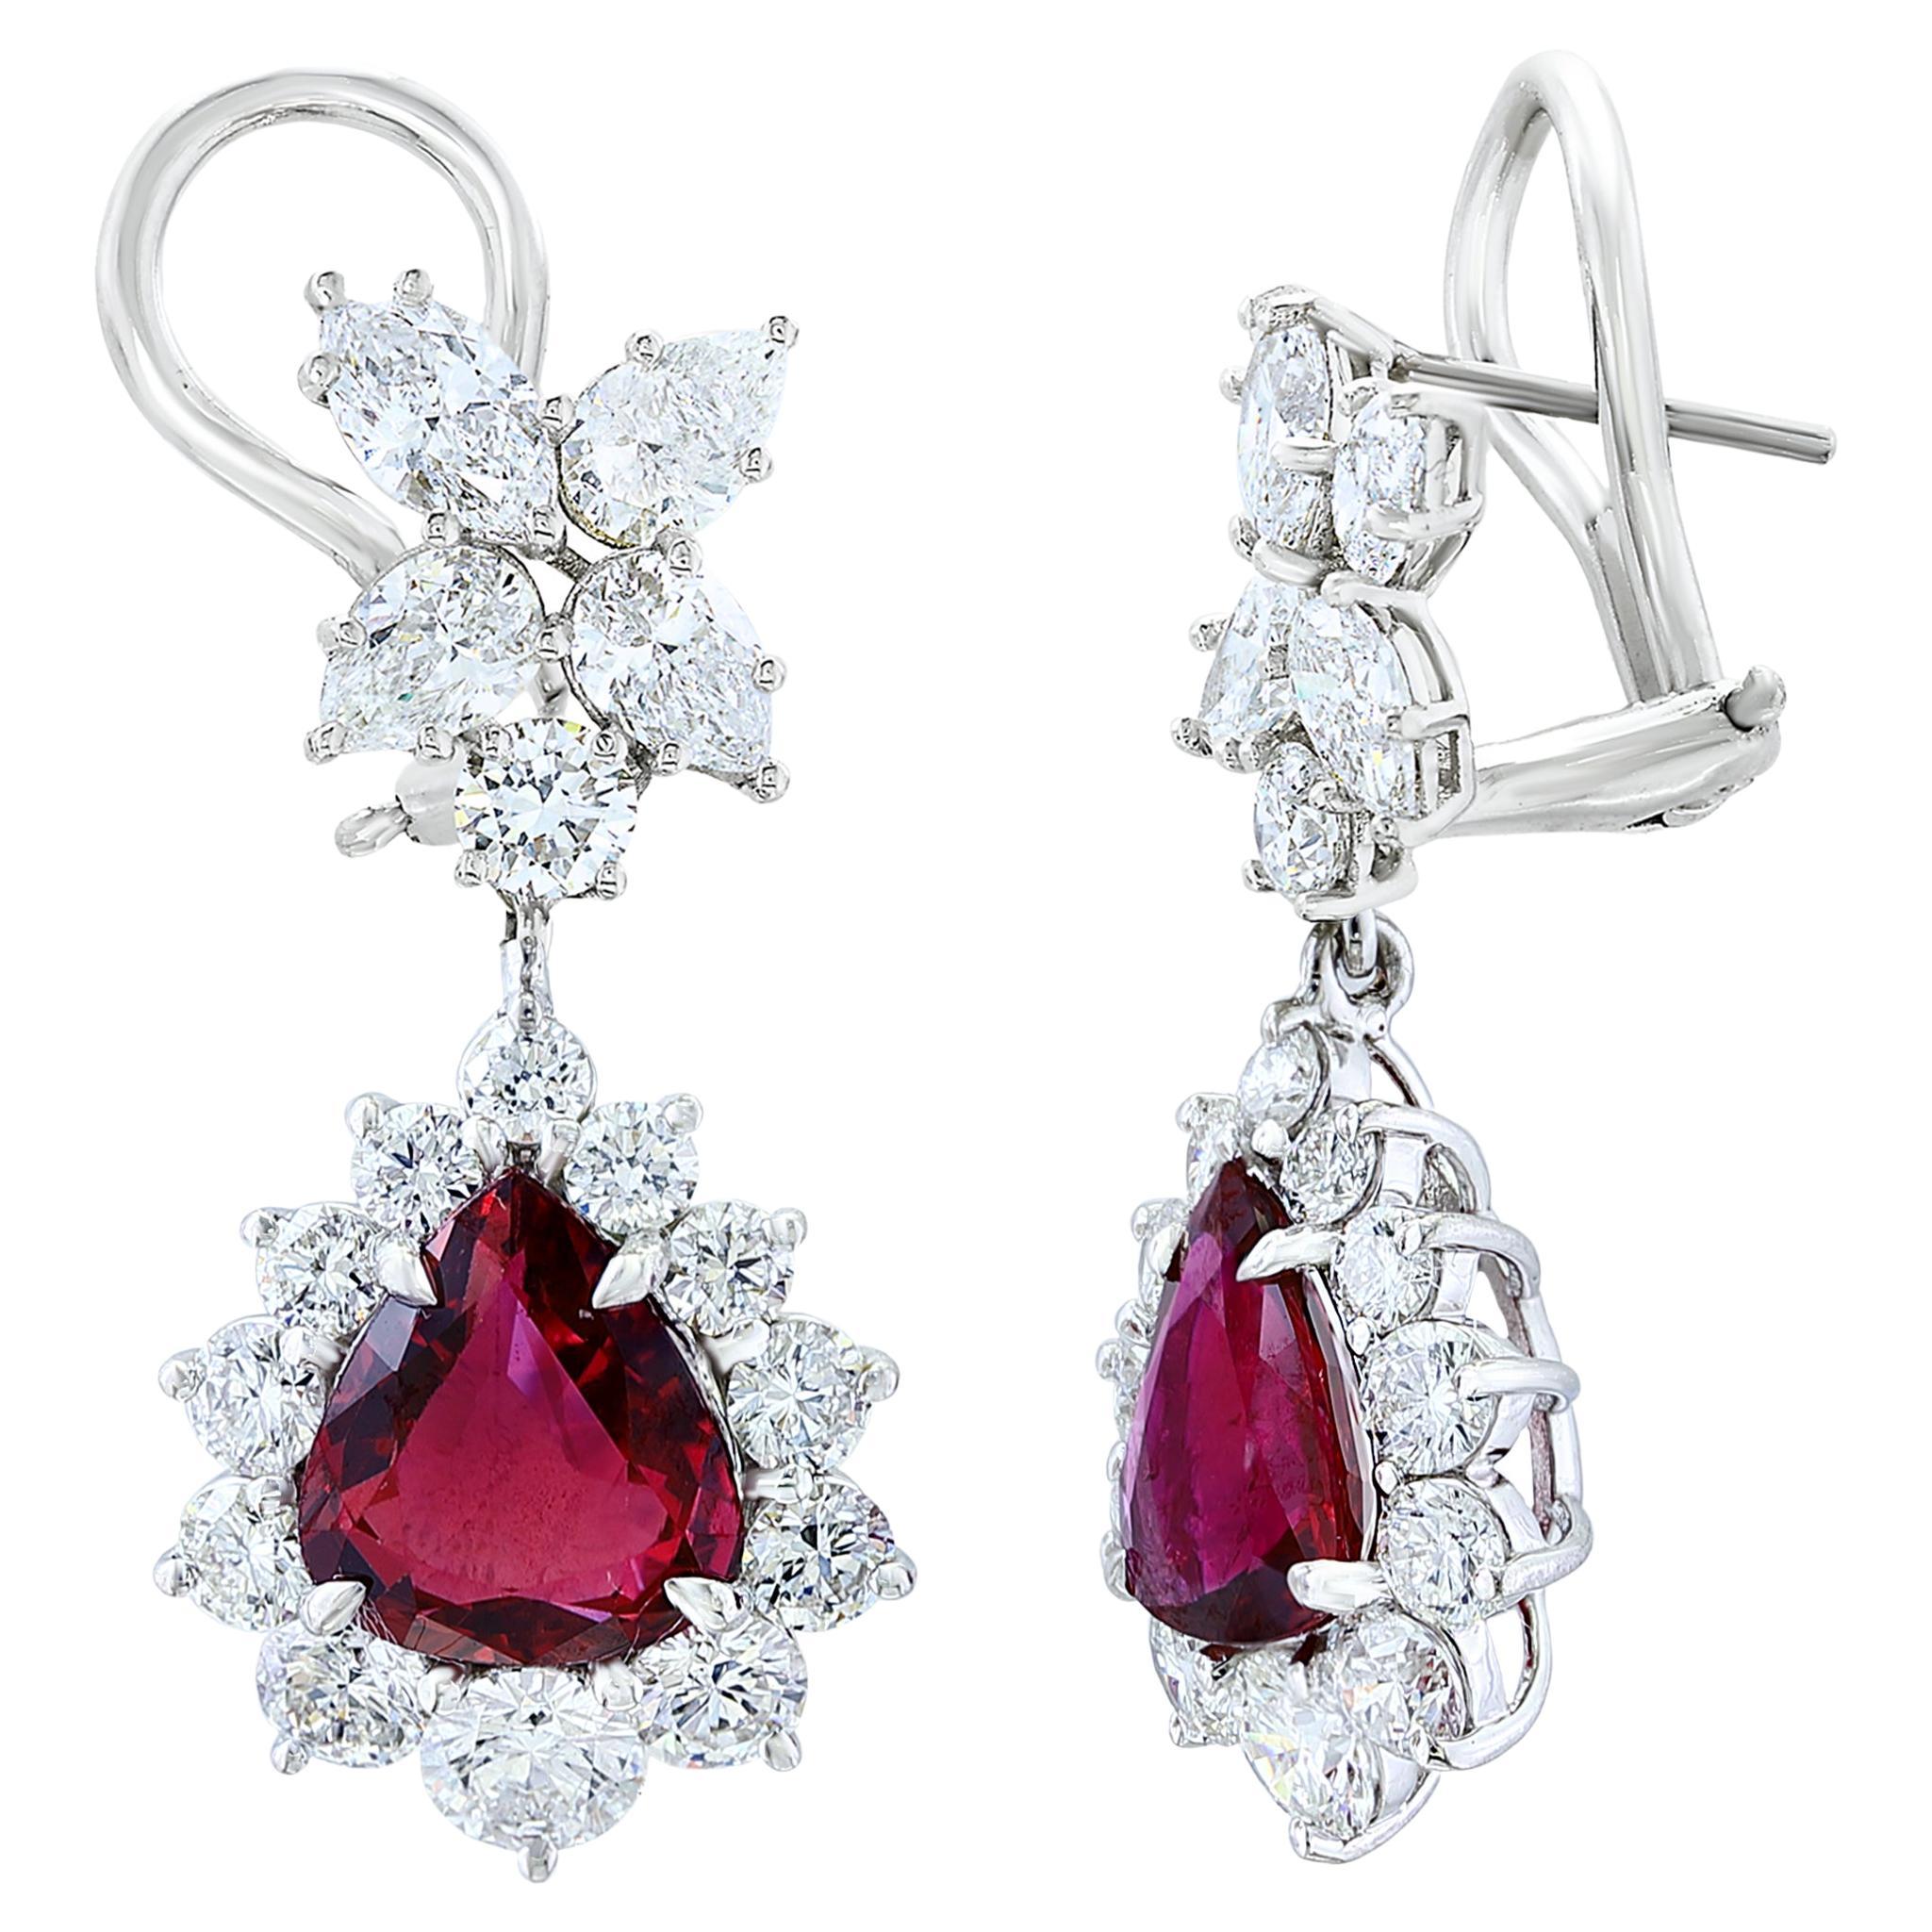 Certified 4.02 Carat Pear Shape Rubies & Diamond Drop Earrings in 18K White Gold For Sale